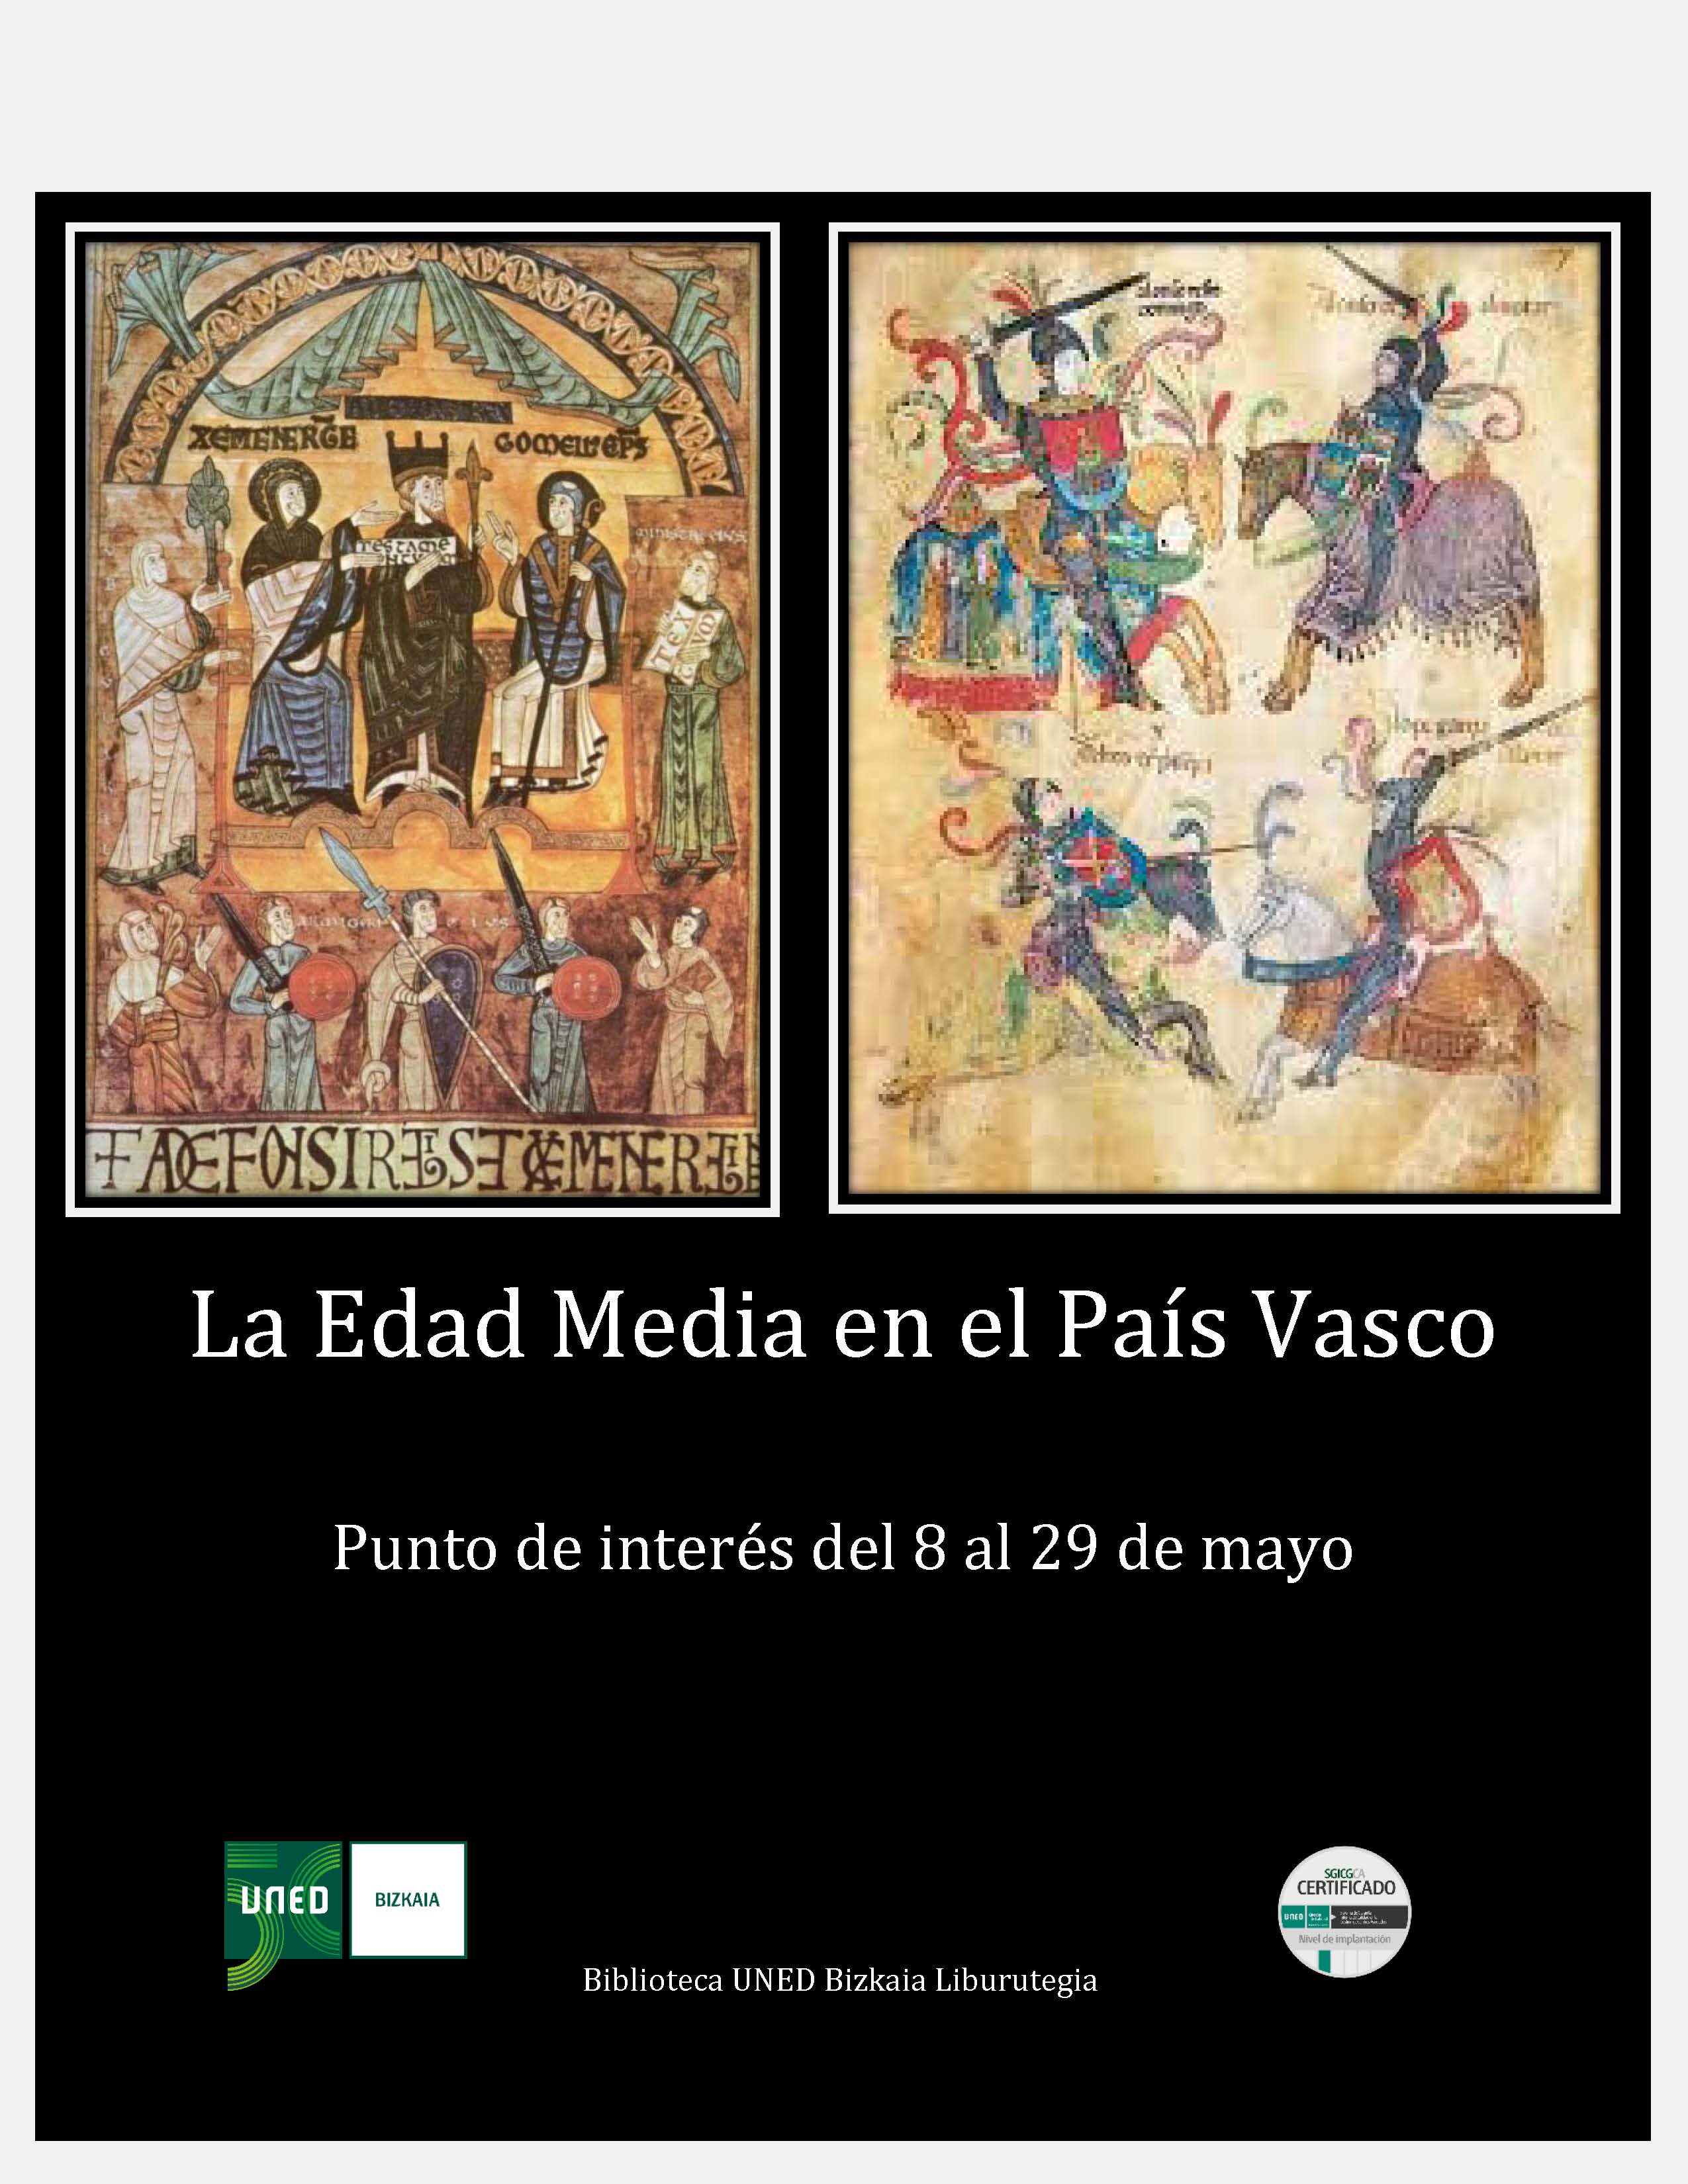 Imagen Dosier La Edad Media en el País Vasco